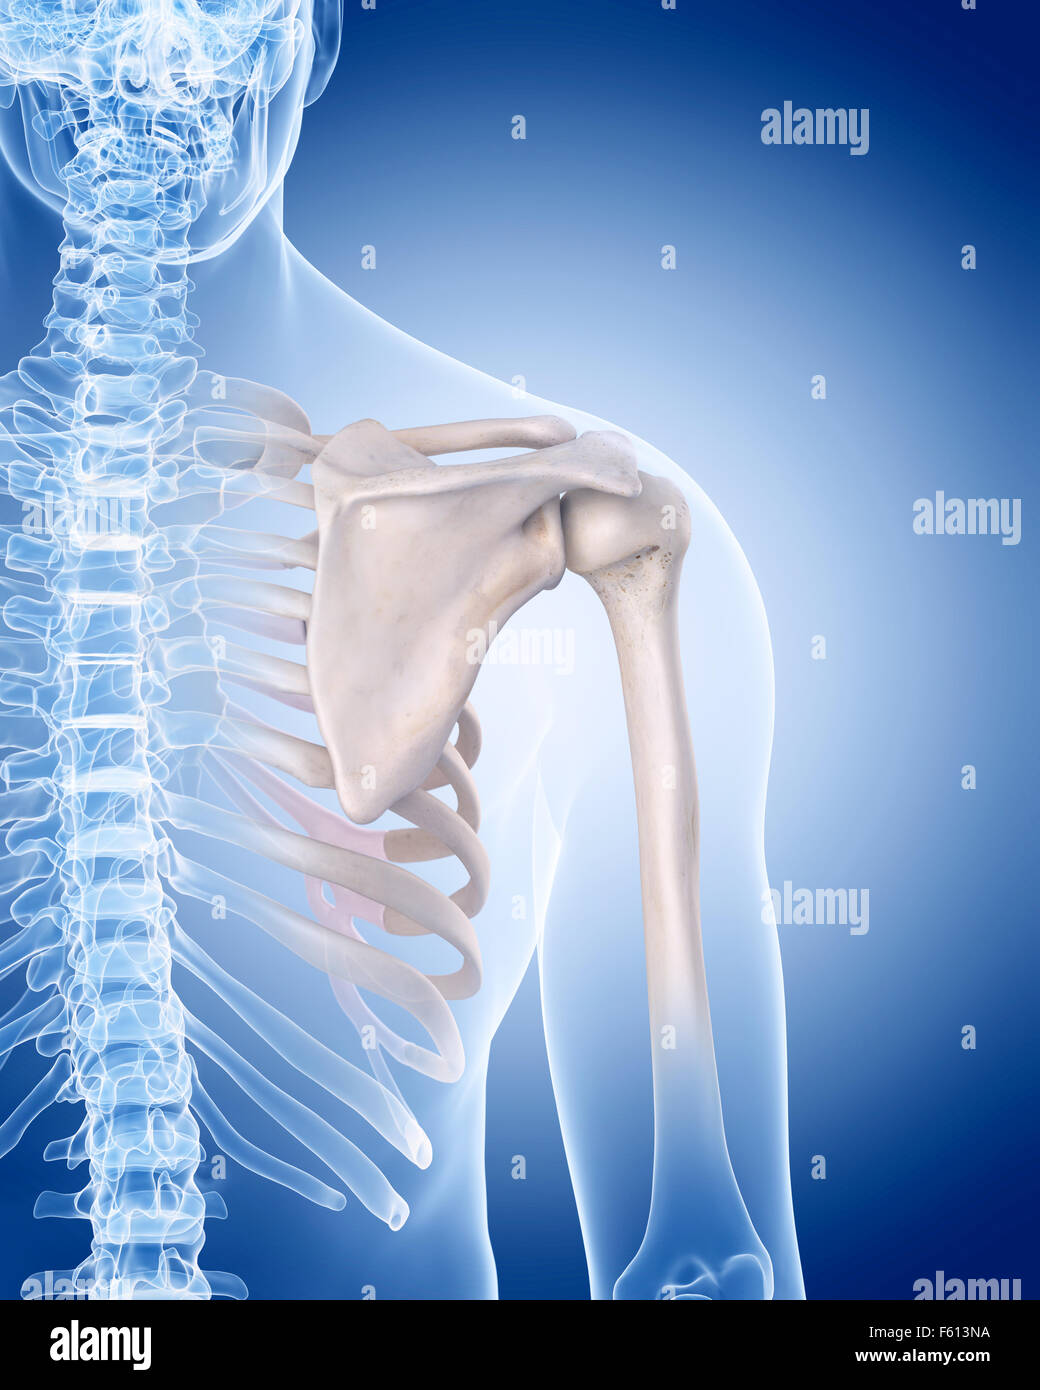 medizinisch genaue Abbildung des menschlichen Skeletts - Schulter Stockfoto